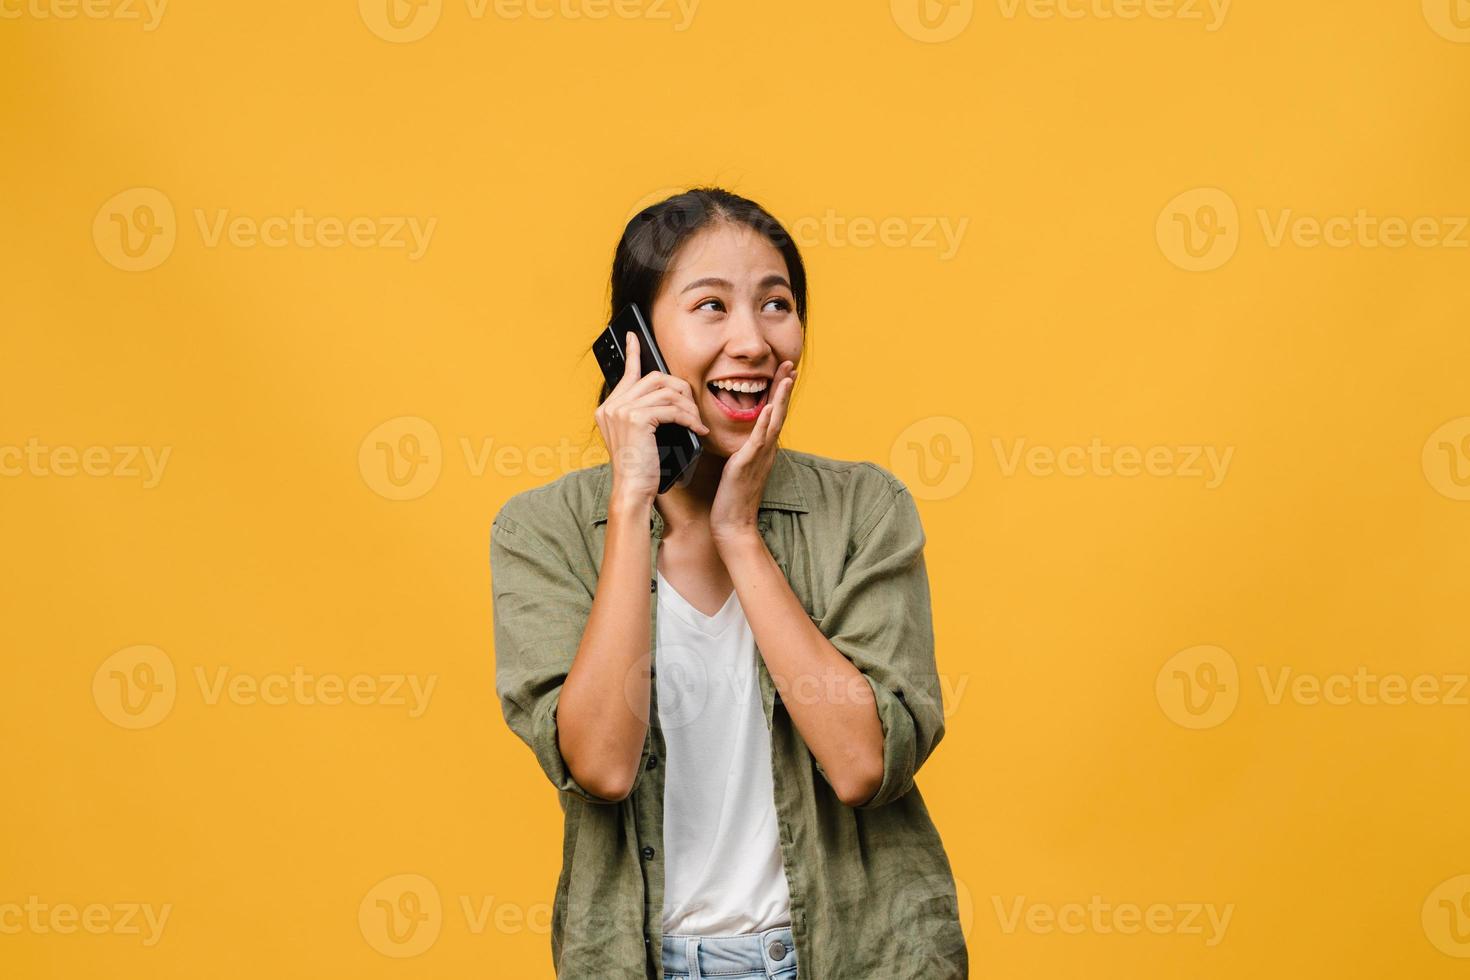 jonge aziatische dame praat telefonisch met positieve uitdrukking, glimlach breed, gekleed in casual kleding die geluk voelt en geïsoleerd op gele achtergrond staat. gelukkige schattige blije vrouw verheugt zich over succes. foto